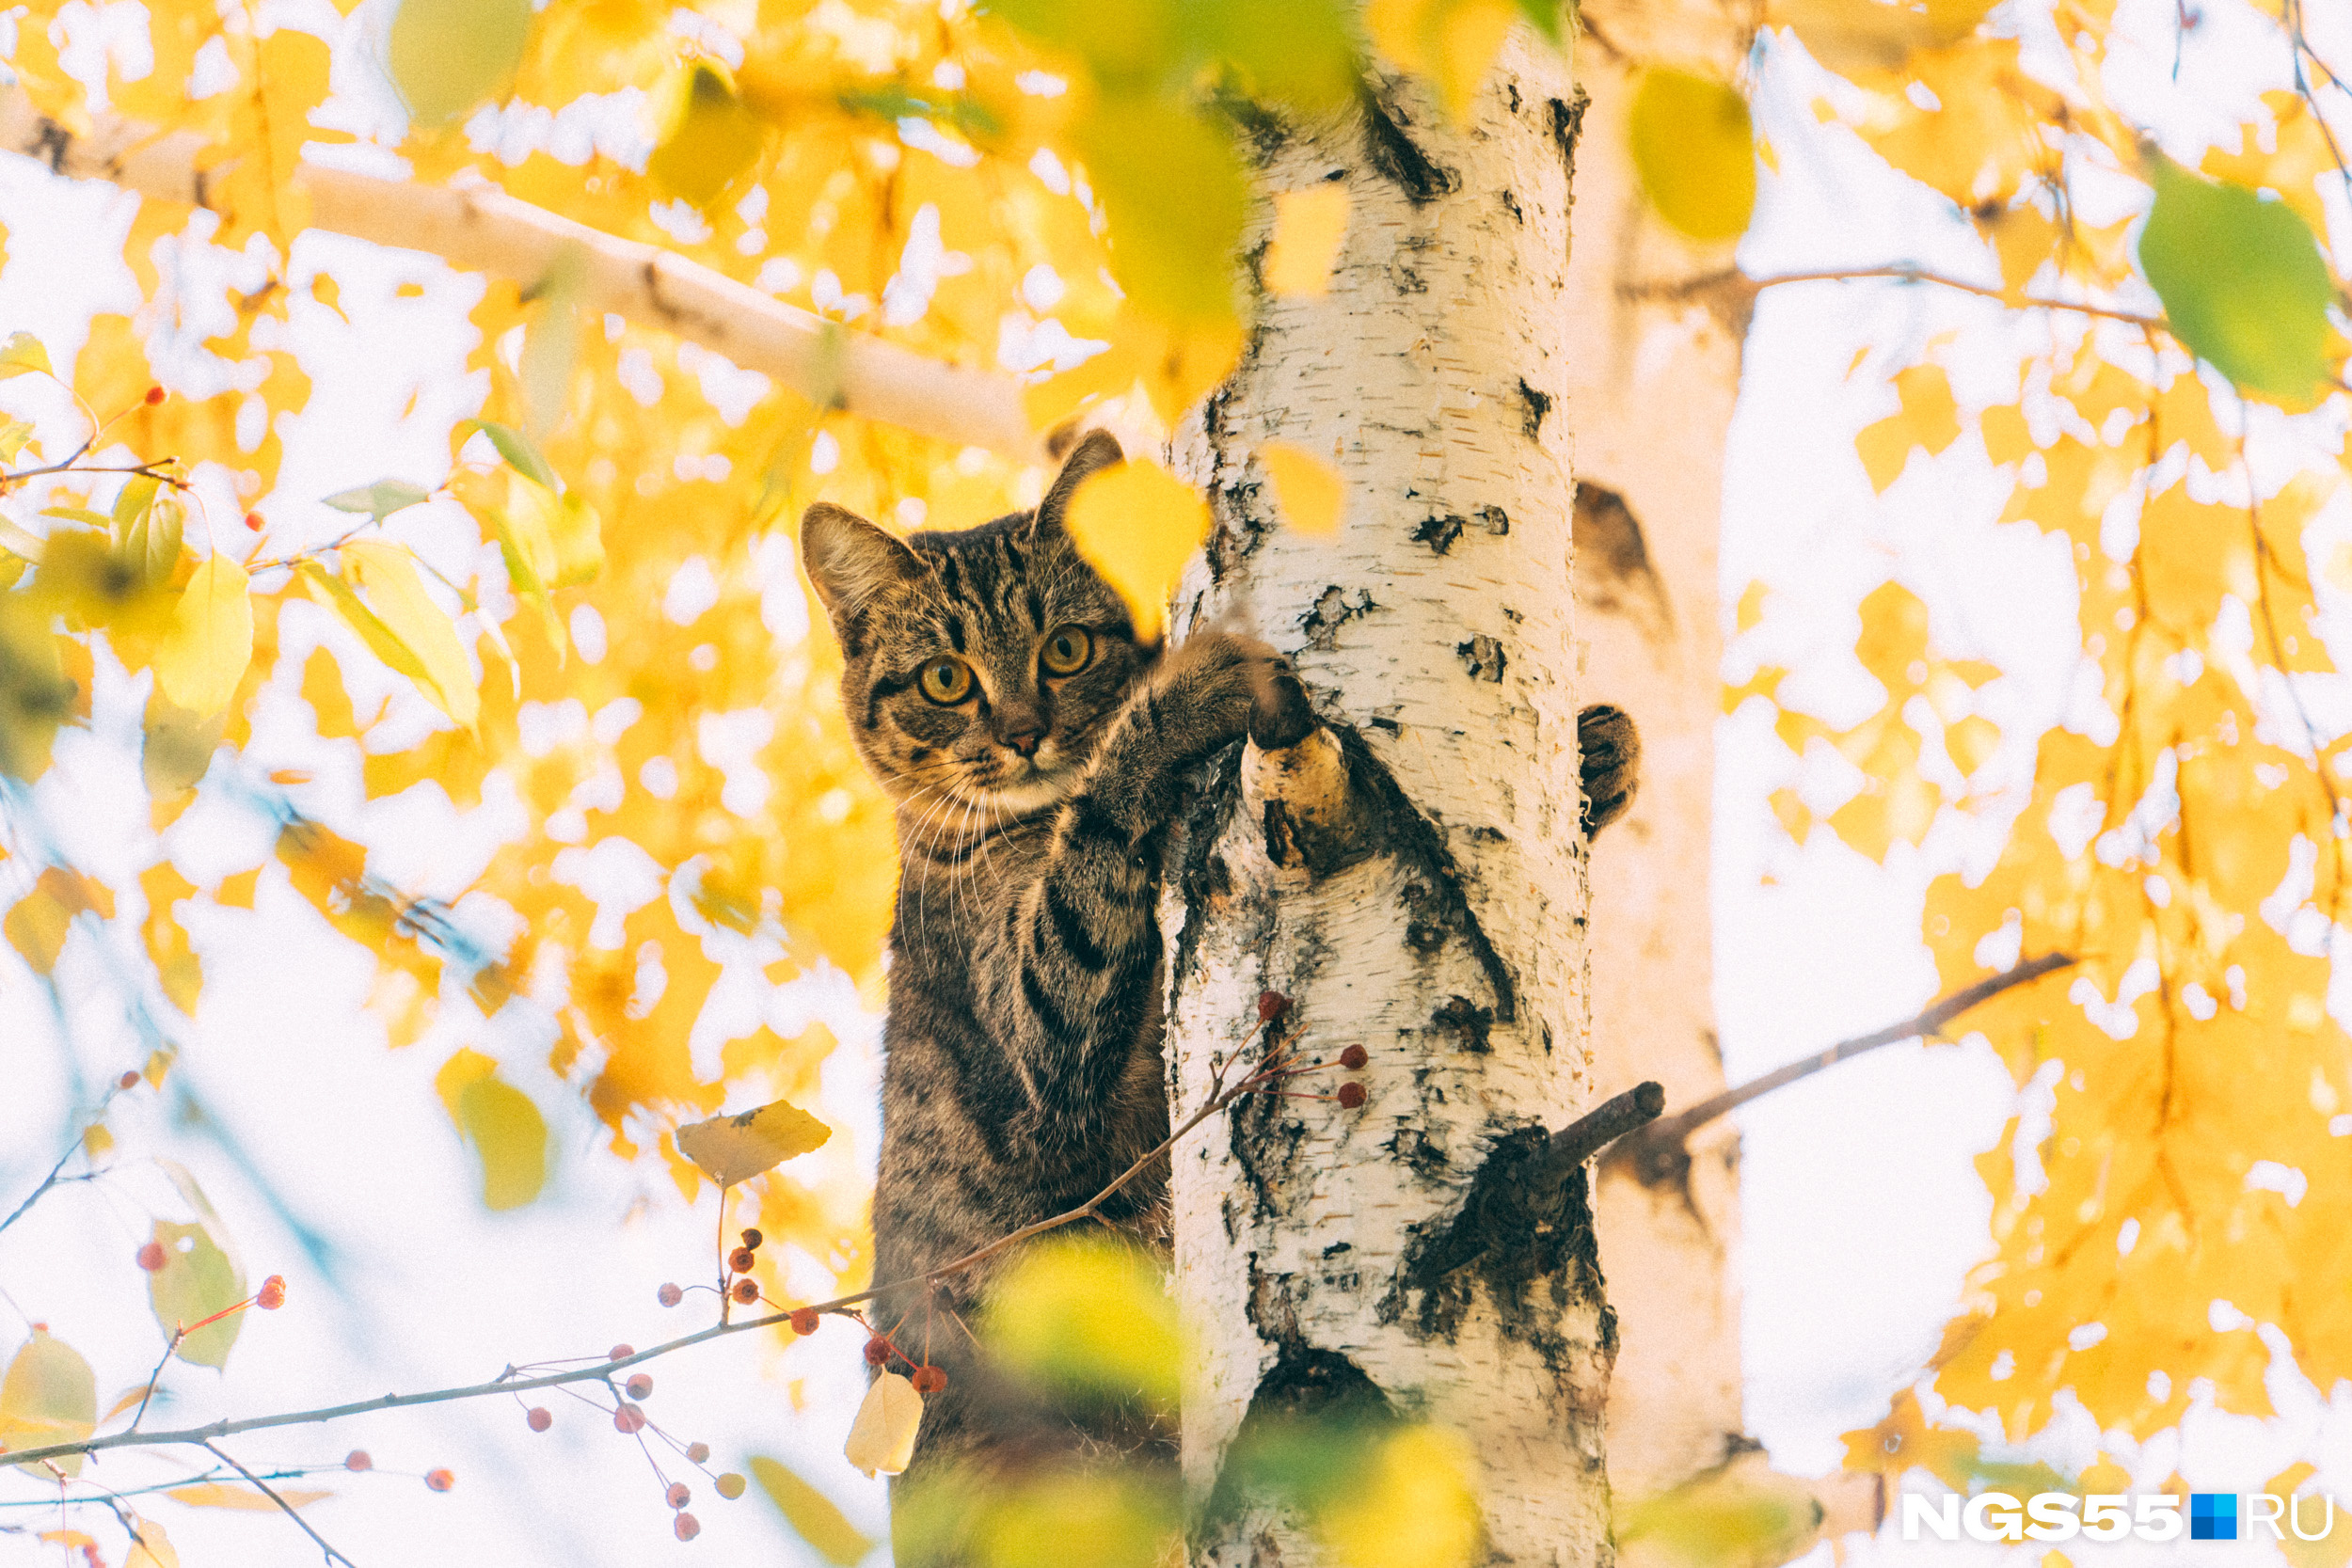 Уличный кот решил притвориться рысью и забрался на дерево. Наверное, оттуда открывается потрясающий вид на листопад<br>